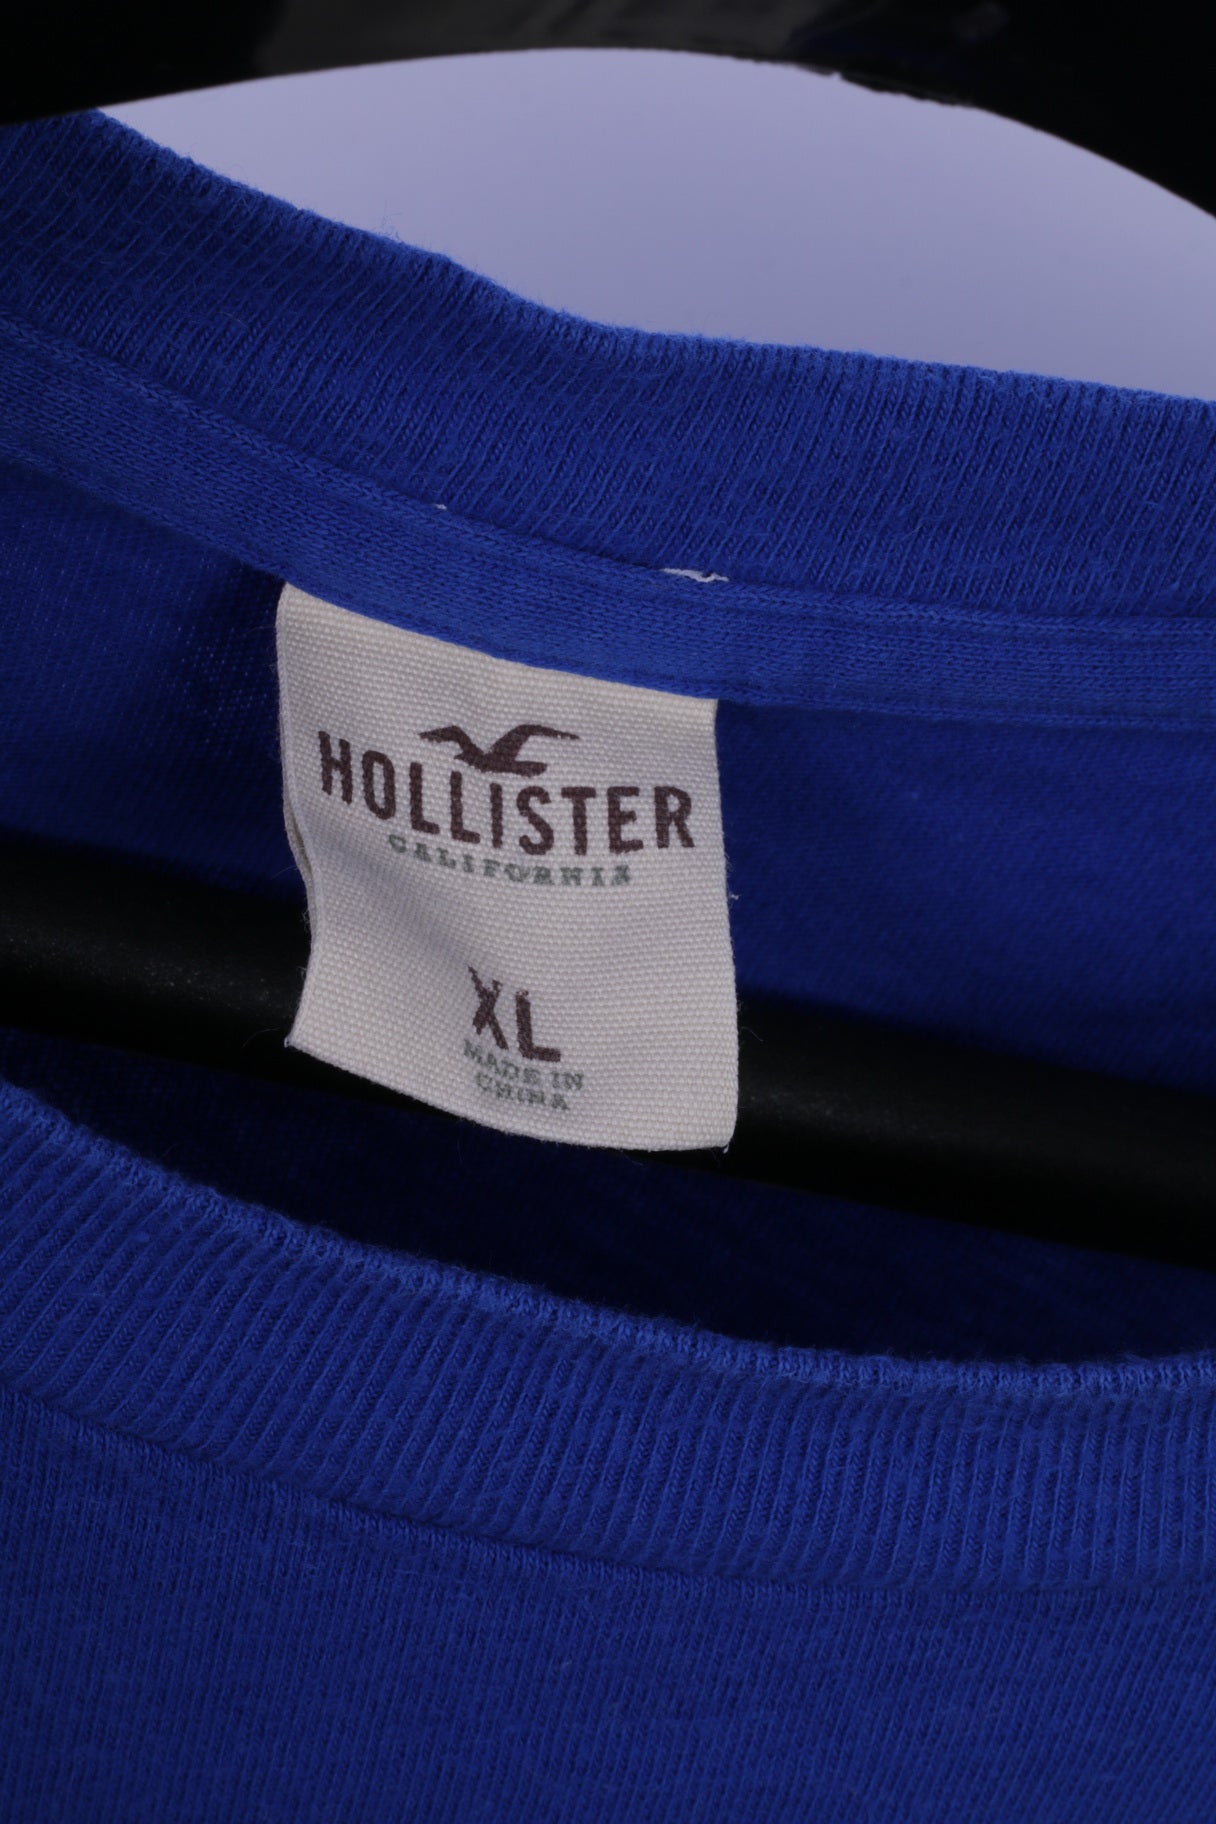 Hollister California Mens XL Long Sleeved Shirt Blue Cotton Stretch Henley Top